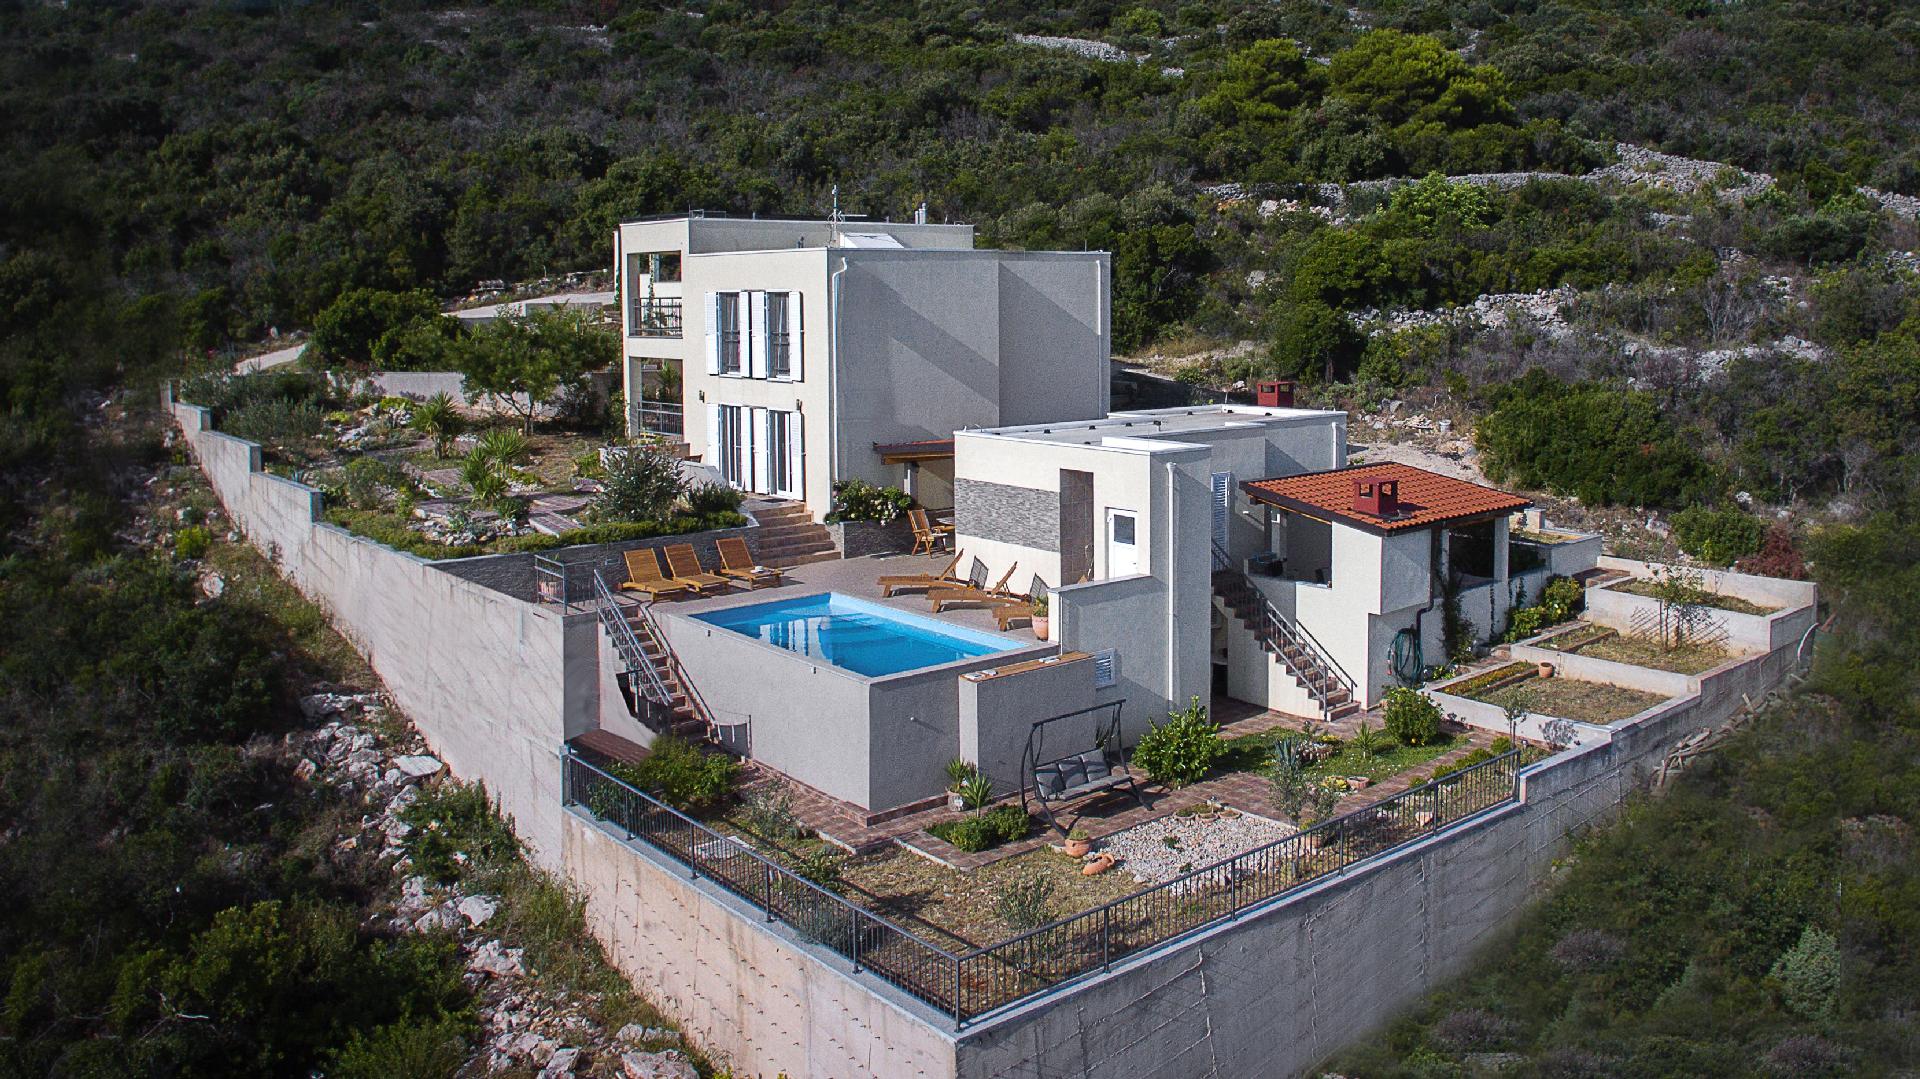 Ferienhaus mit Privatpool für 10 Personen ca. Ferienwohnung in Dalmatien